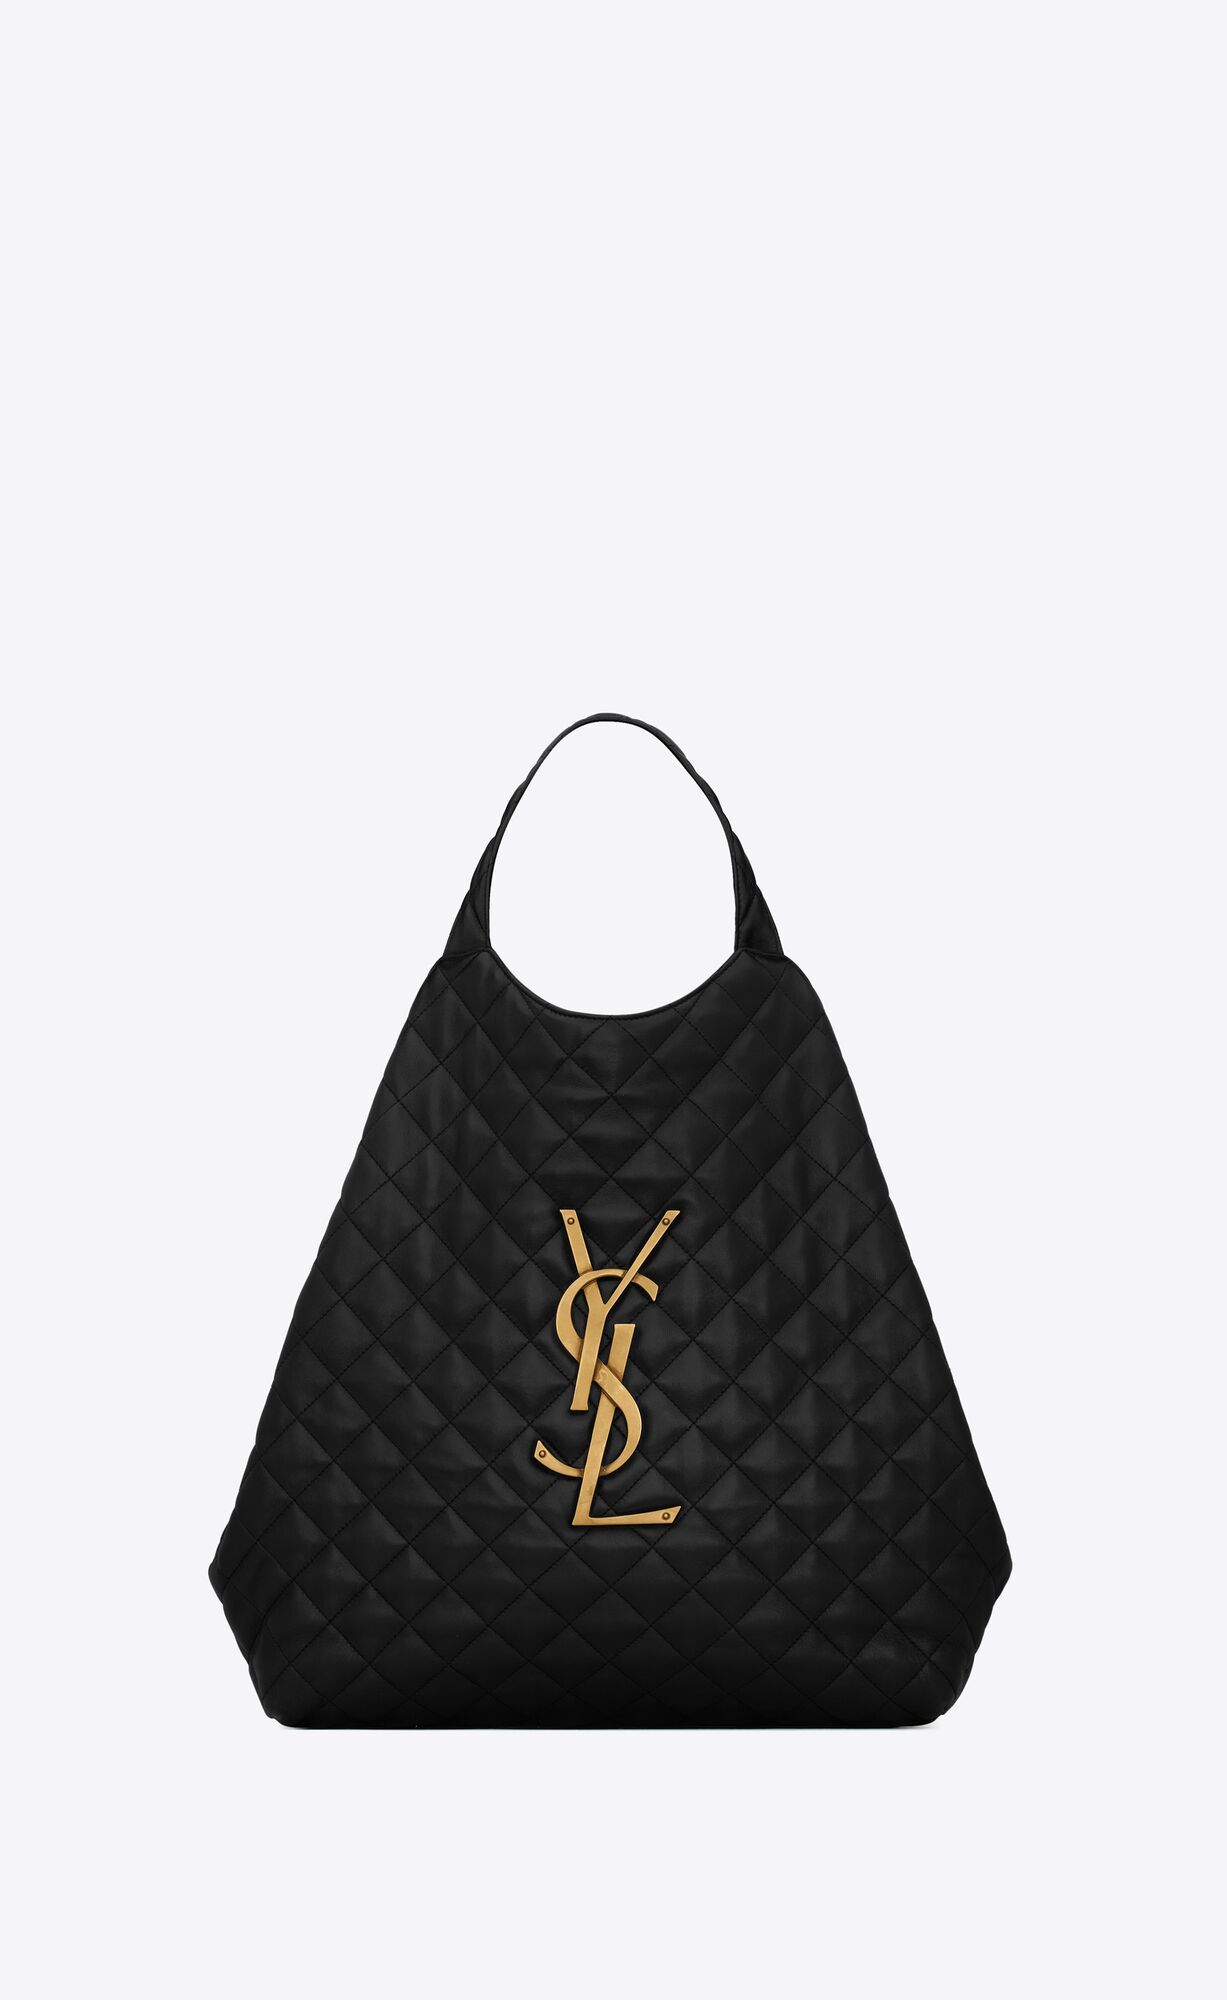 YSL Vintage purse top handle flap : r/handbags